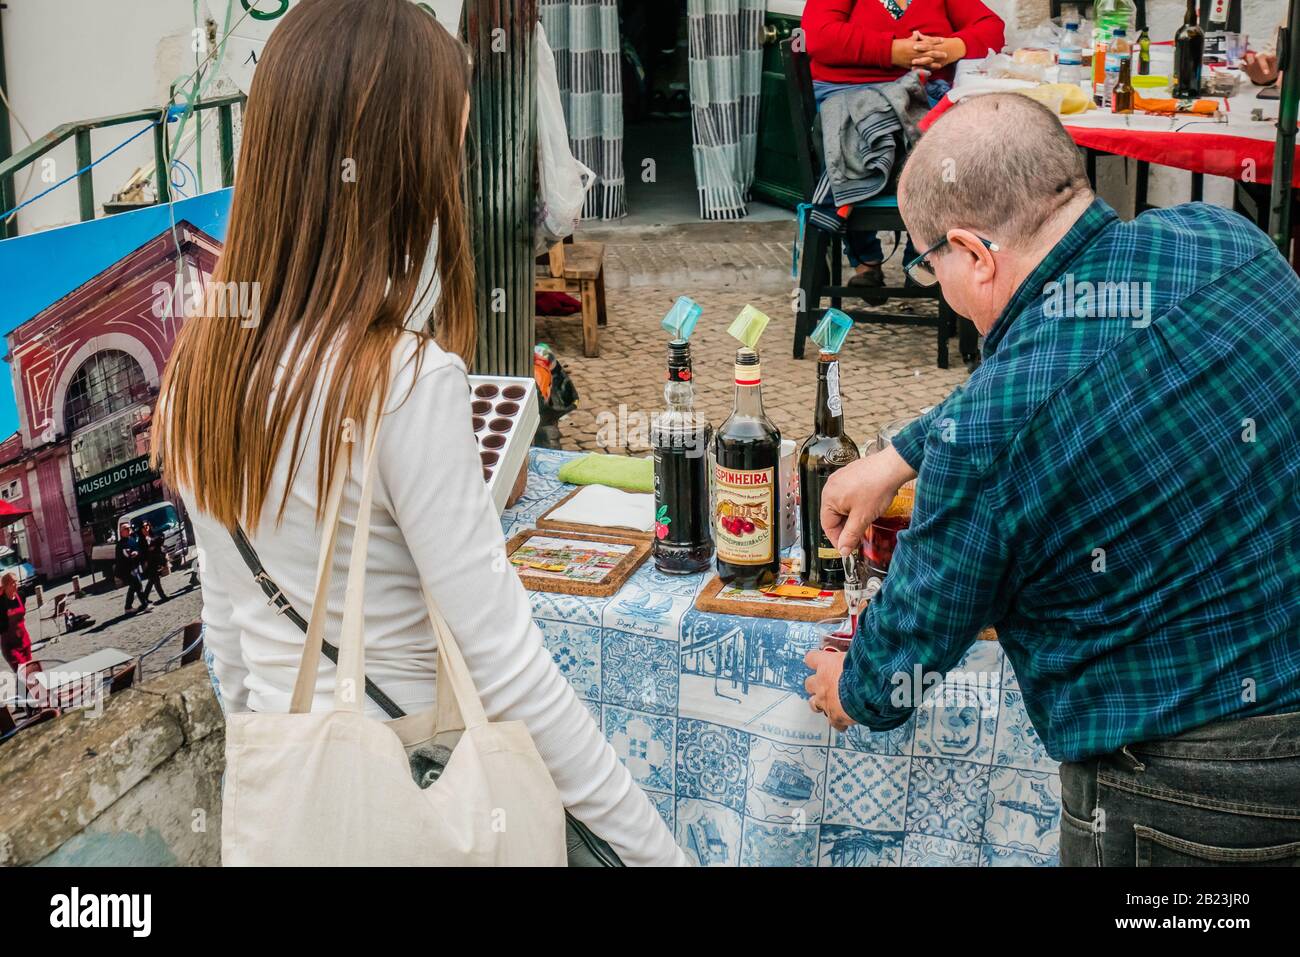 Vendeur de rue de sexe masculin servant de la liqueur de cerise aigre Ginjinha en plein air à une femme à alfama lisbonne portugal Banque D'Images